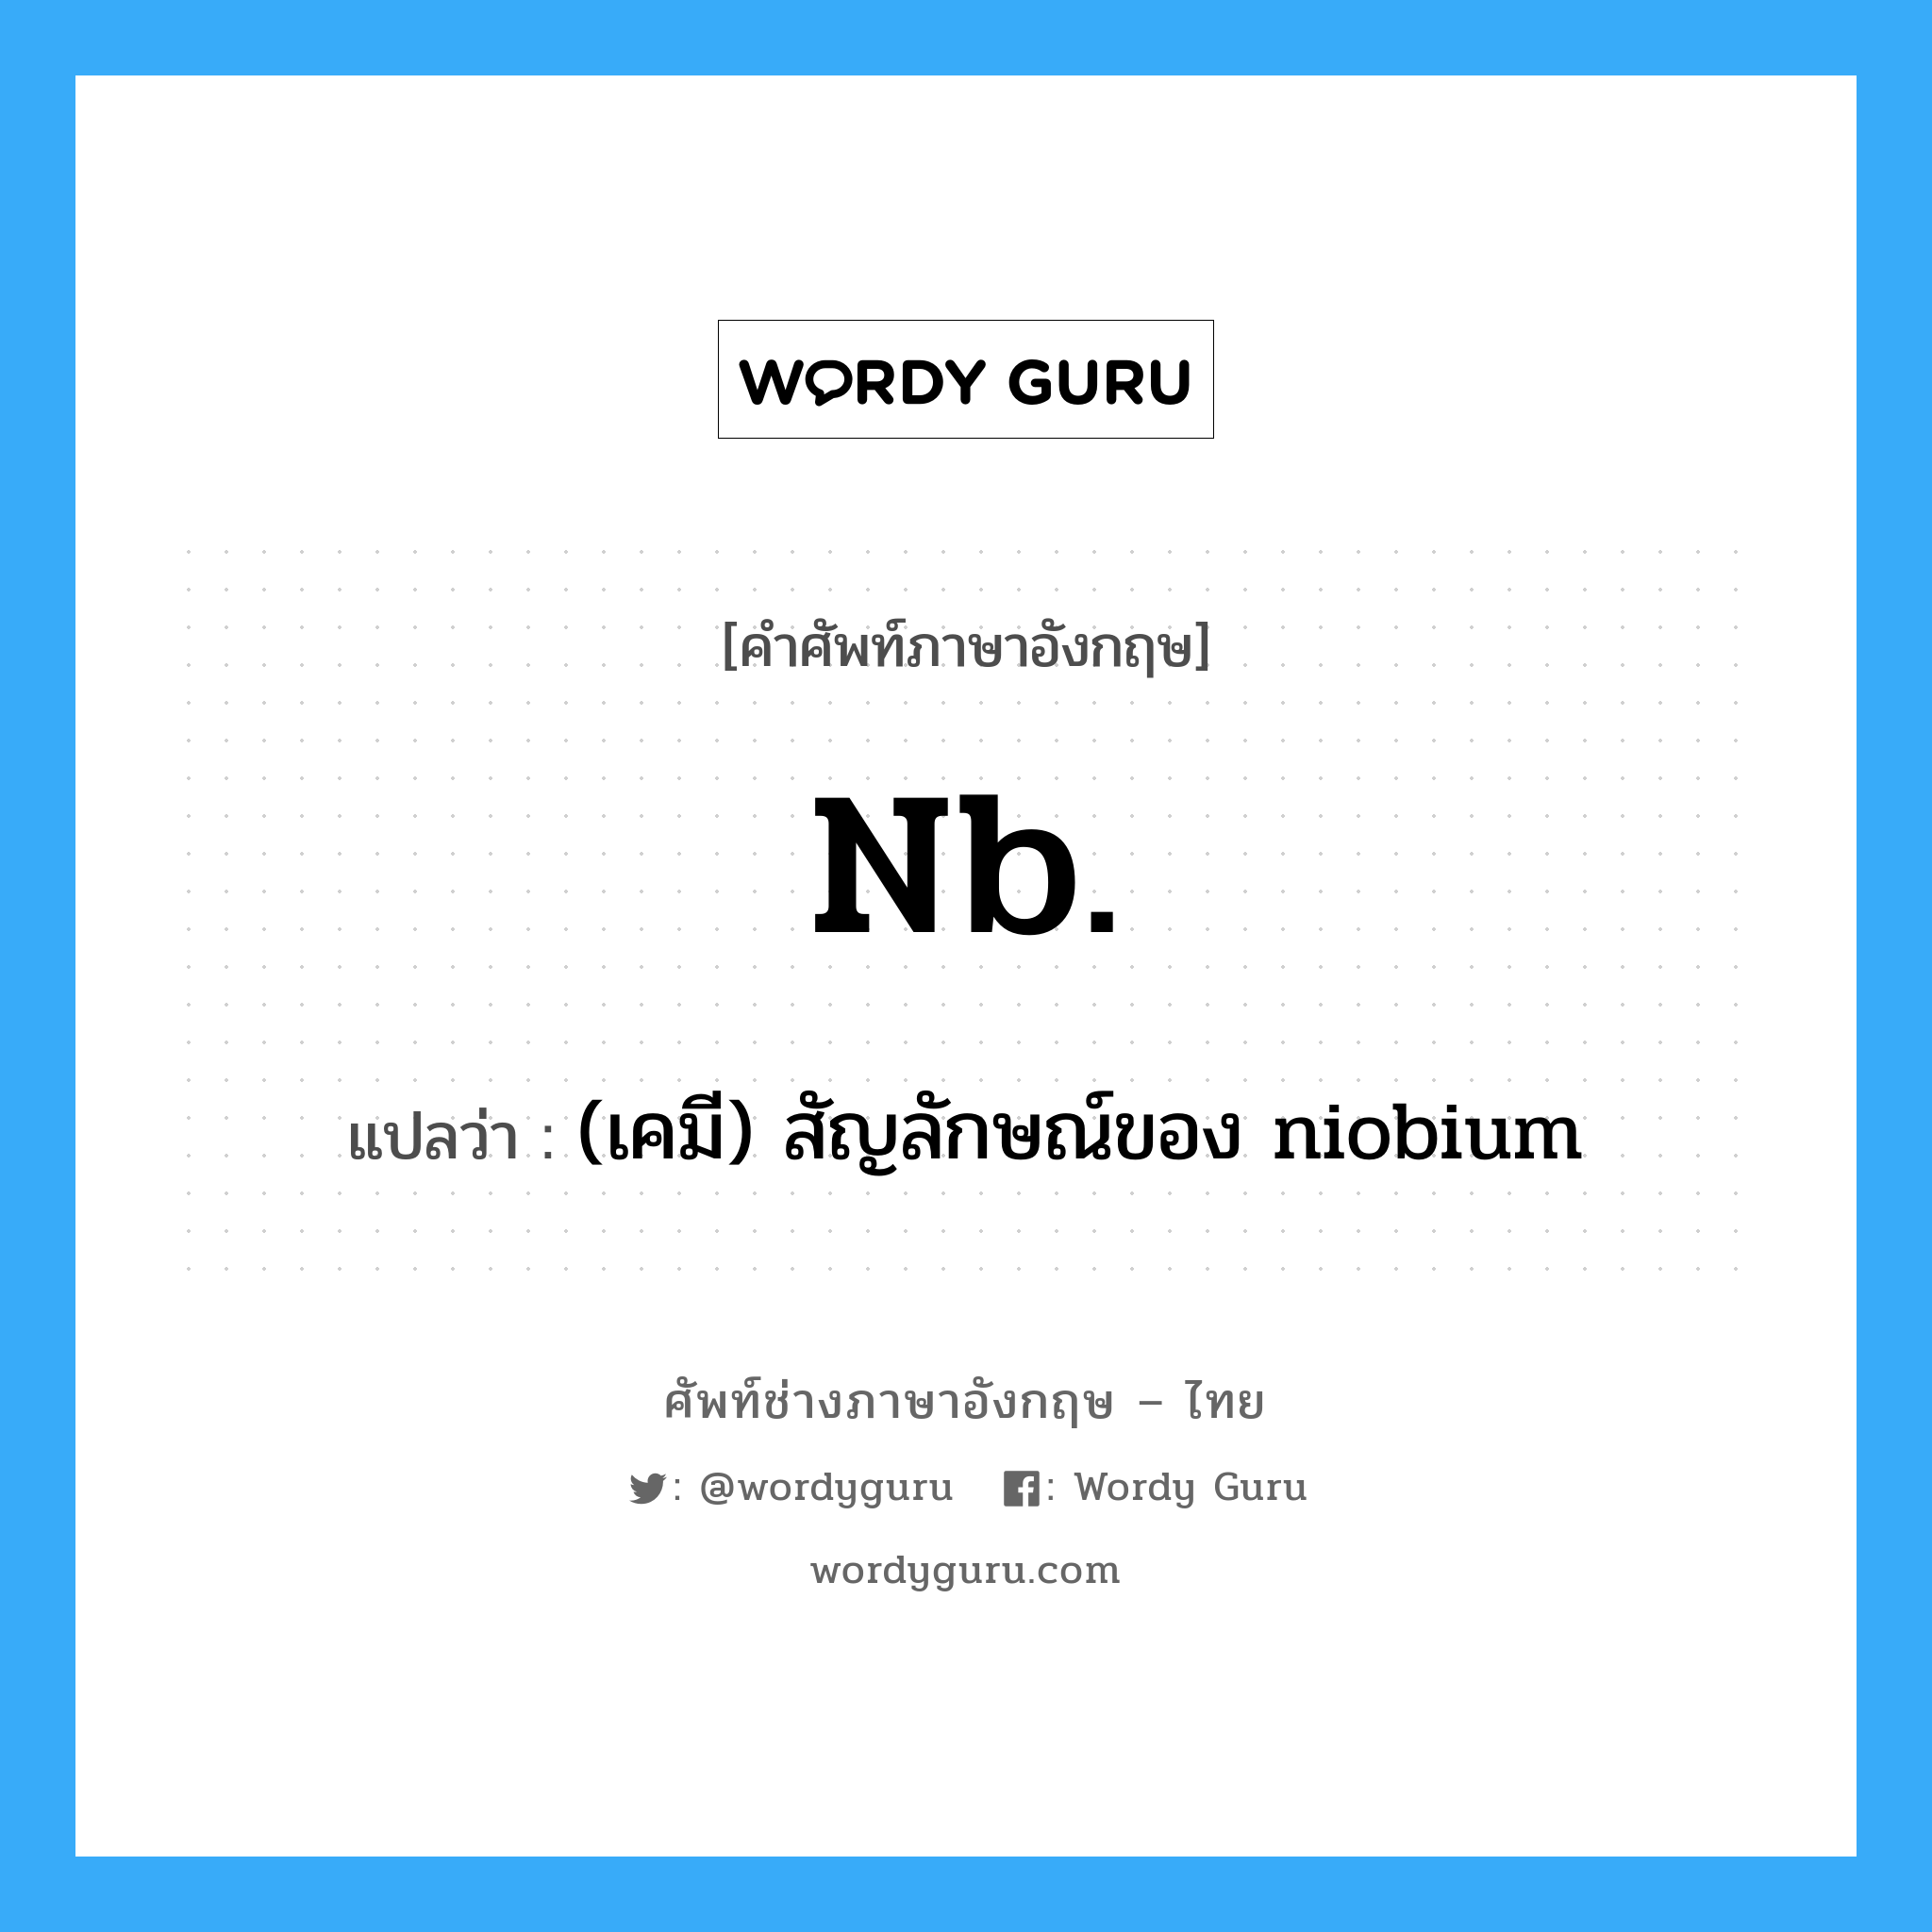 (เคมี) สัญลักษณ์ของ niobium ภาษาอังกฤษ?, คำศัพท์ช่างภาษาอังกฤษ - ไทย (เคมี) สัญลักษณ์ของ niobium คำศัพท์ภาษาอังกฤษ (เคมี) สัญลักษณ์ของ niobium แปลว่า Nb.